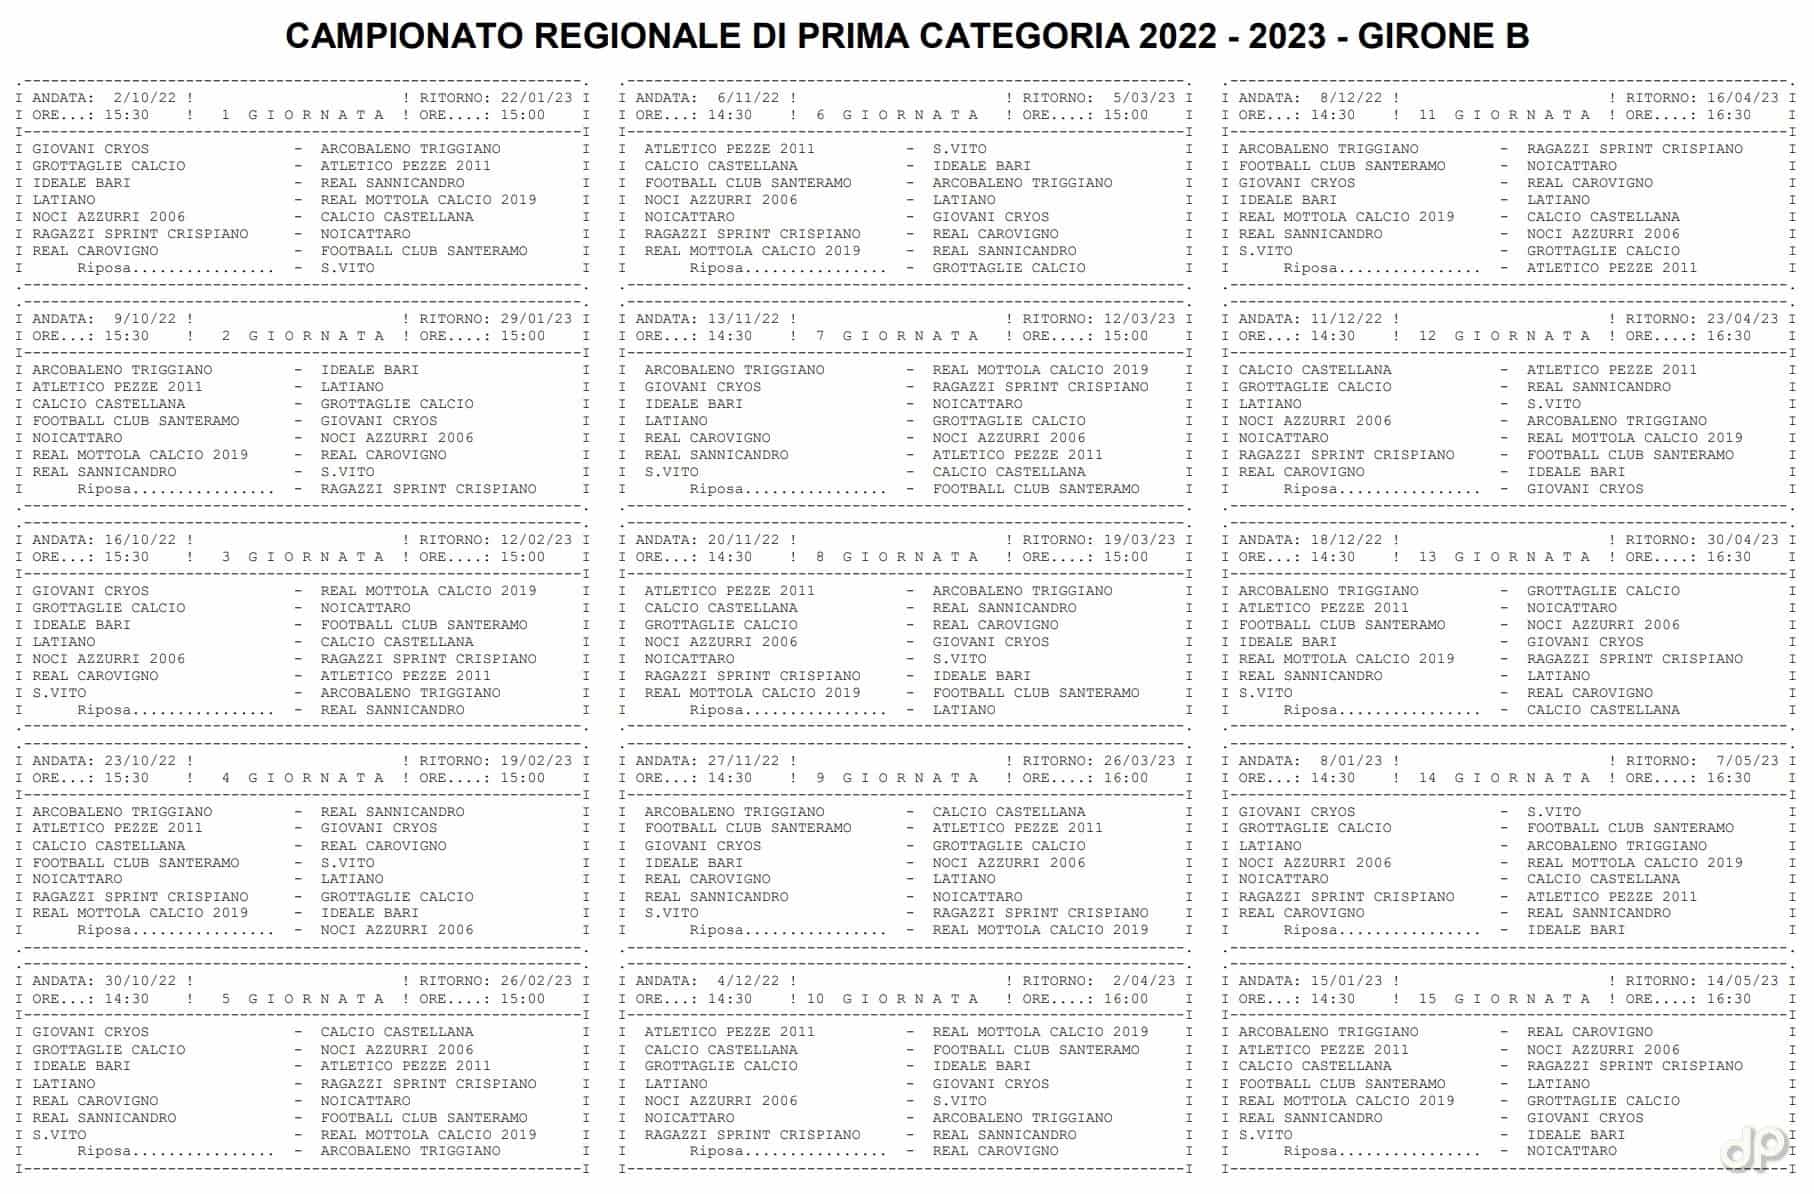 Calendario Prima Categoria pugliese girone B 2022-23